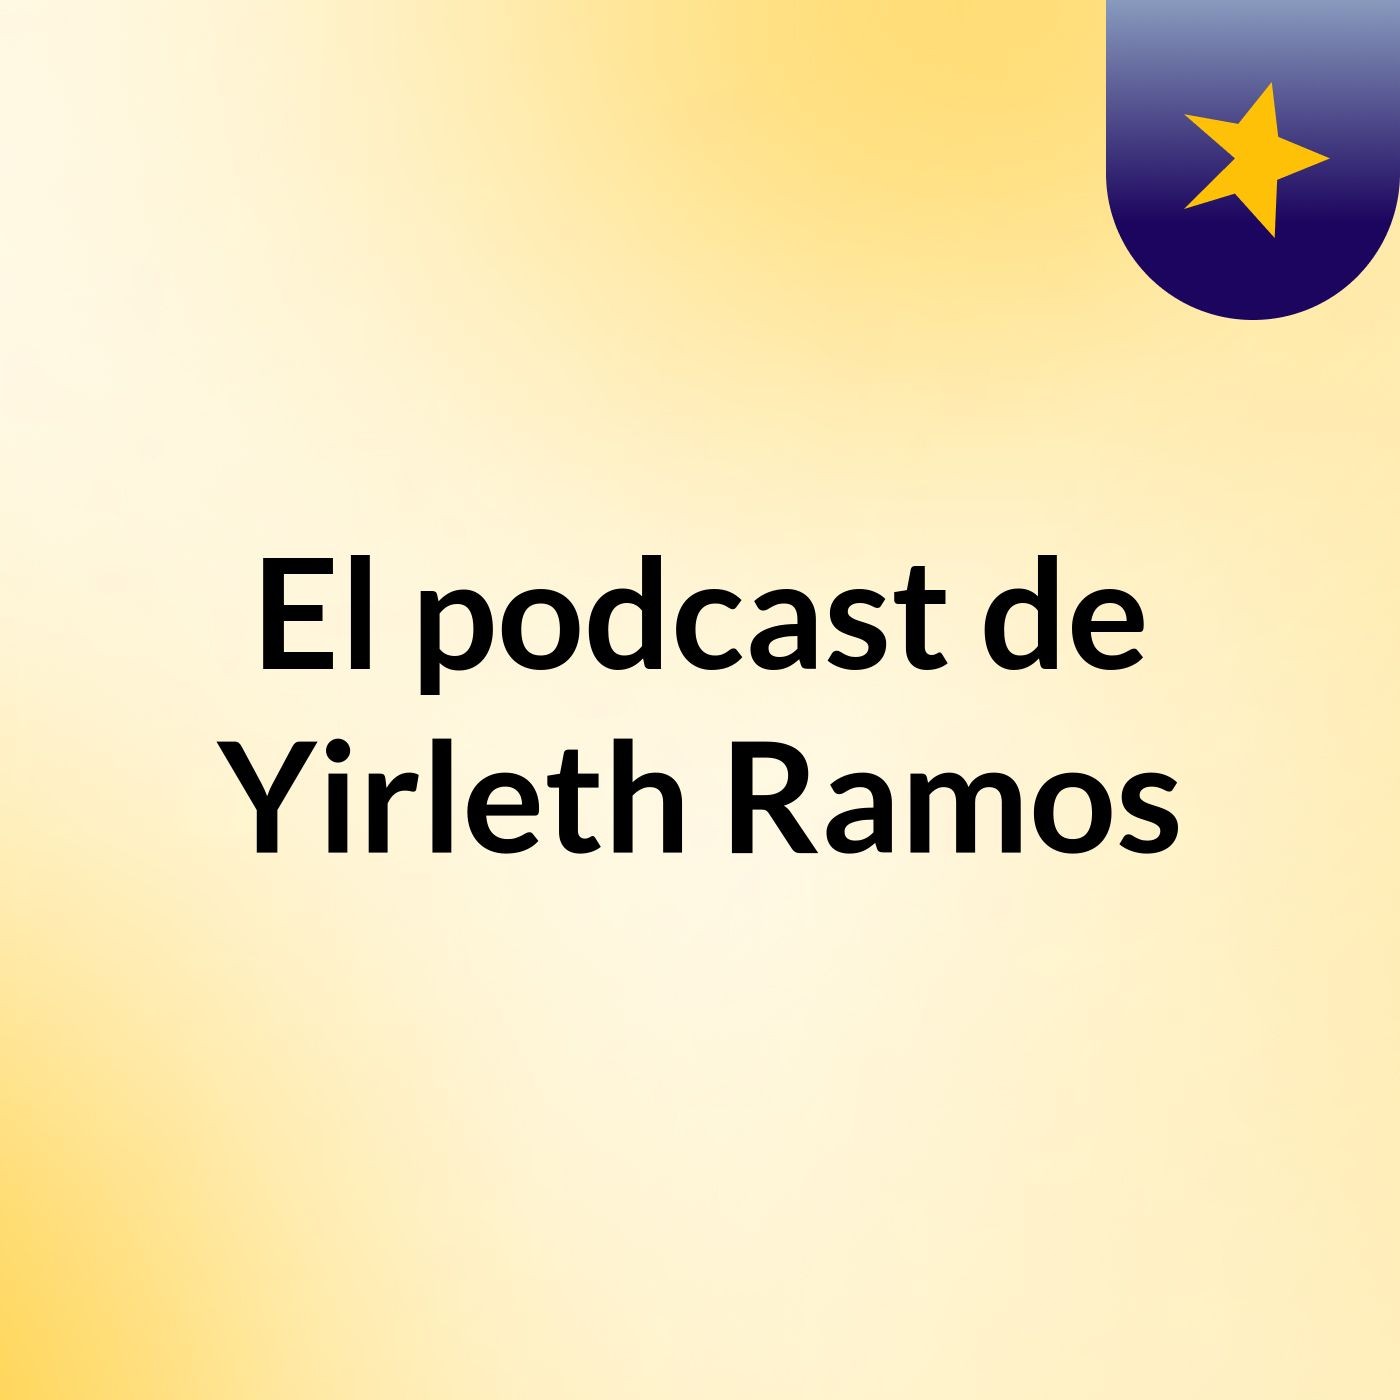 El podcast de Yirleth Ramos